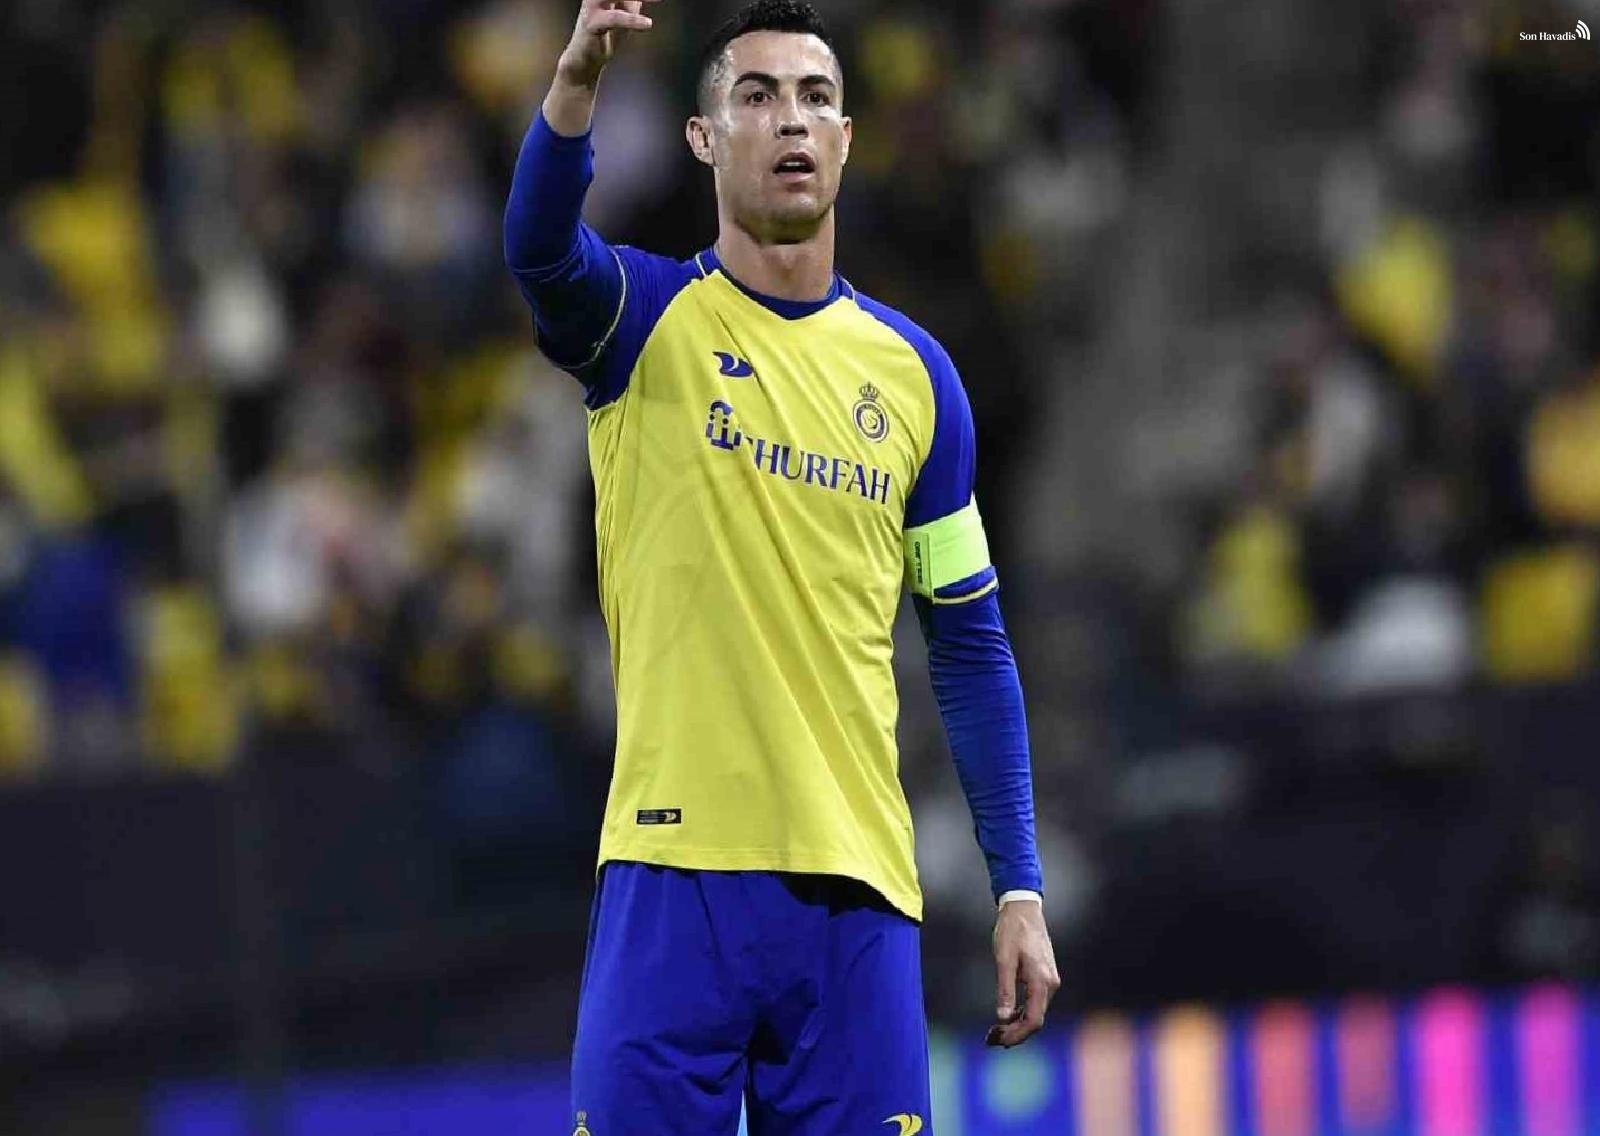 Cristiano Ronaldo'lu Al Nassr, ilgisini Al Ittihad'a kaptırdı